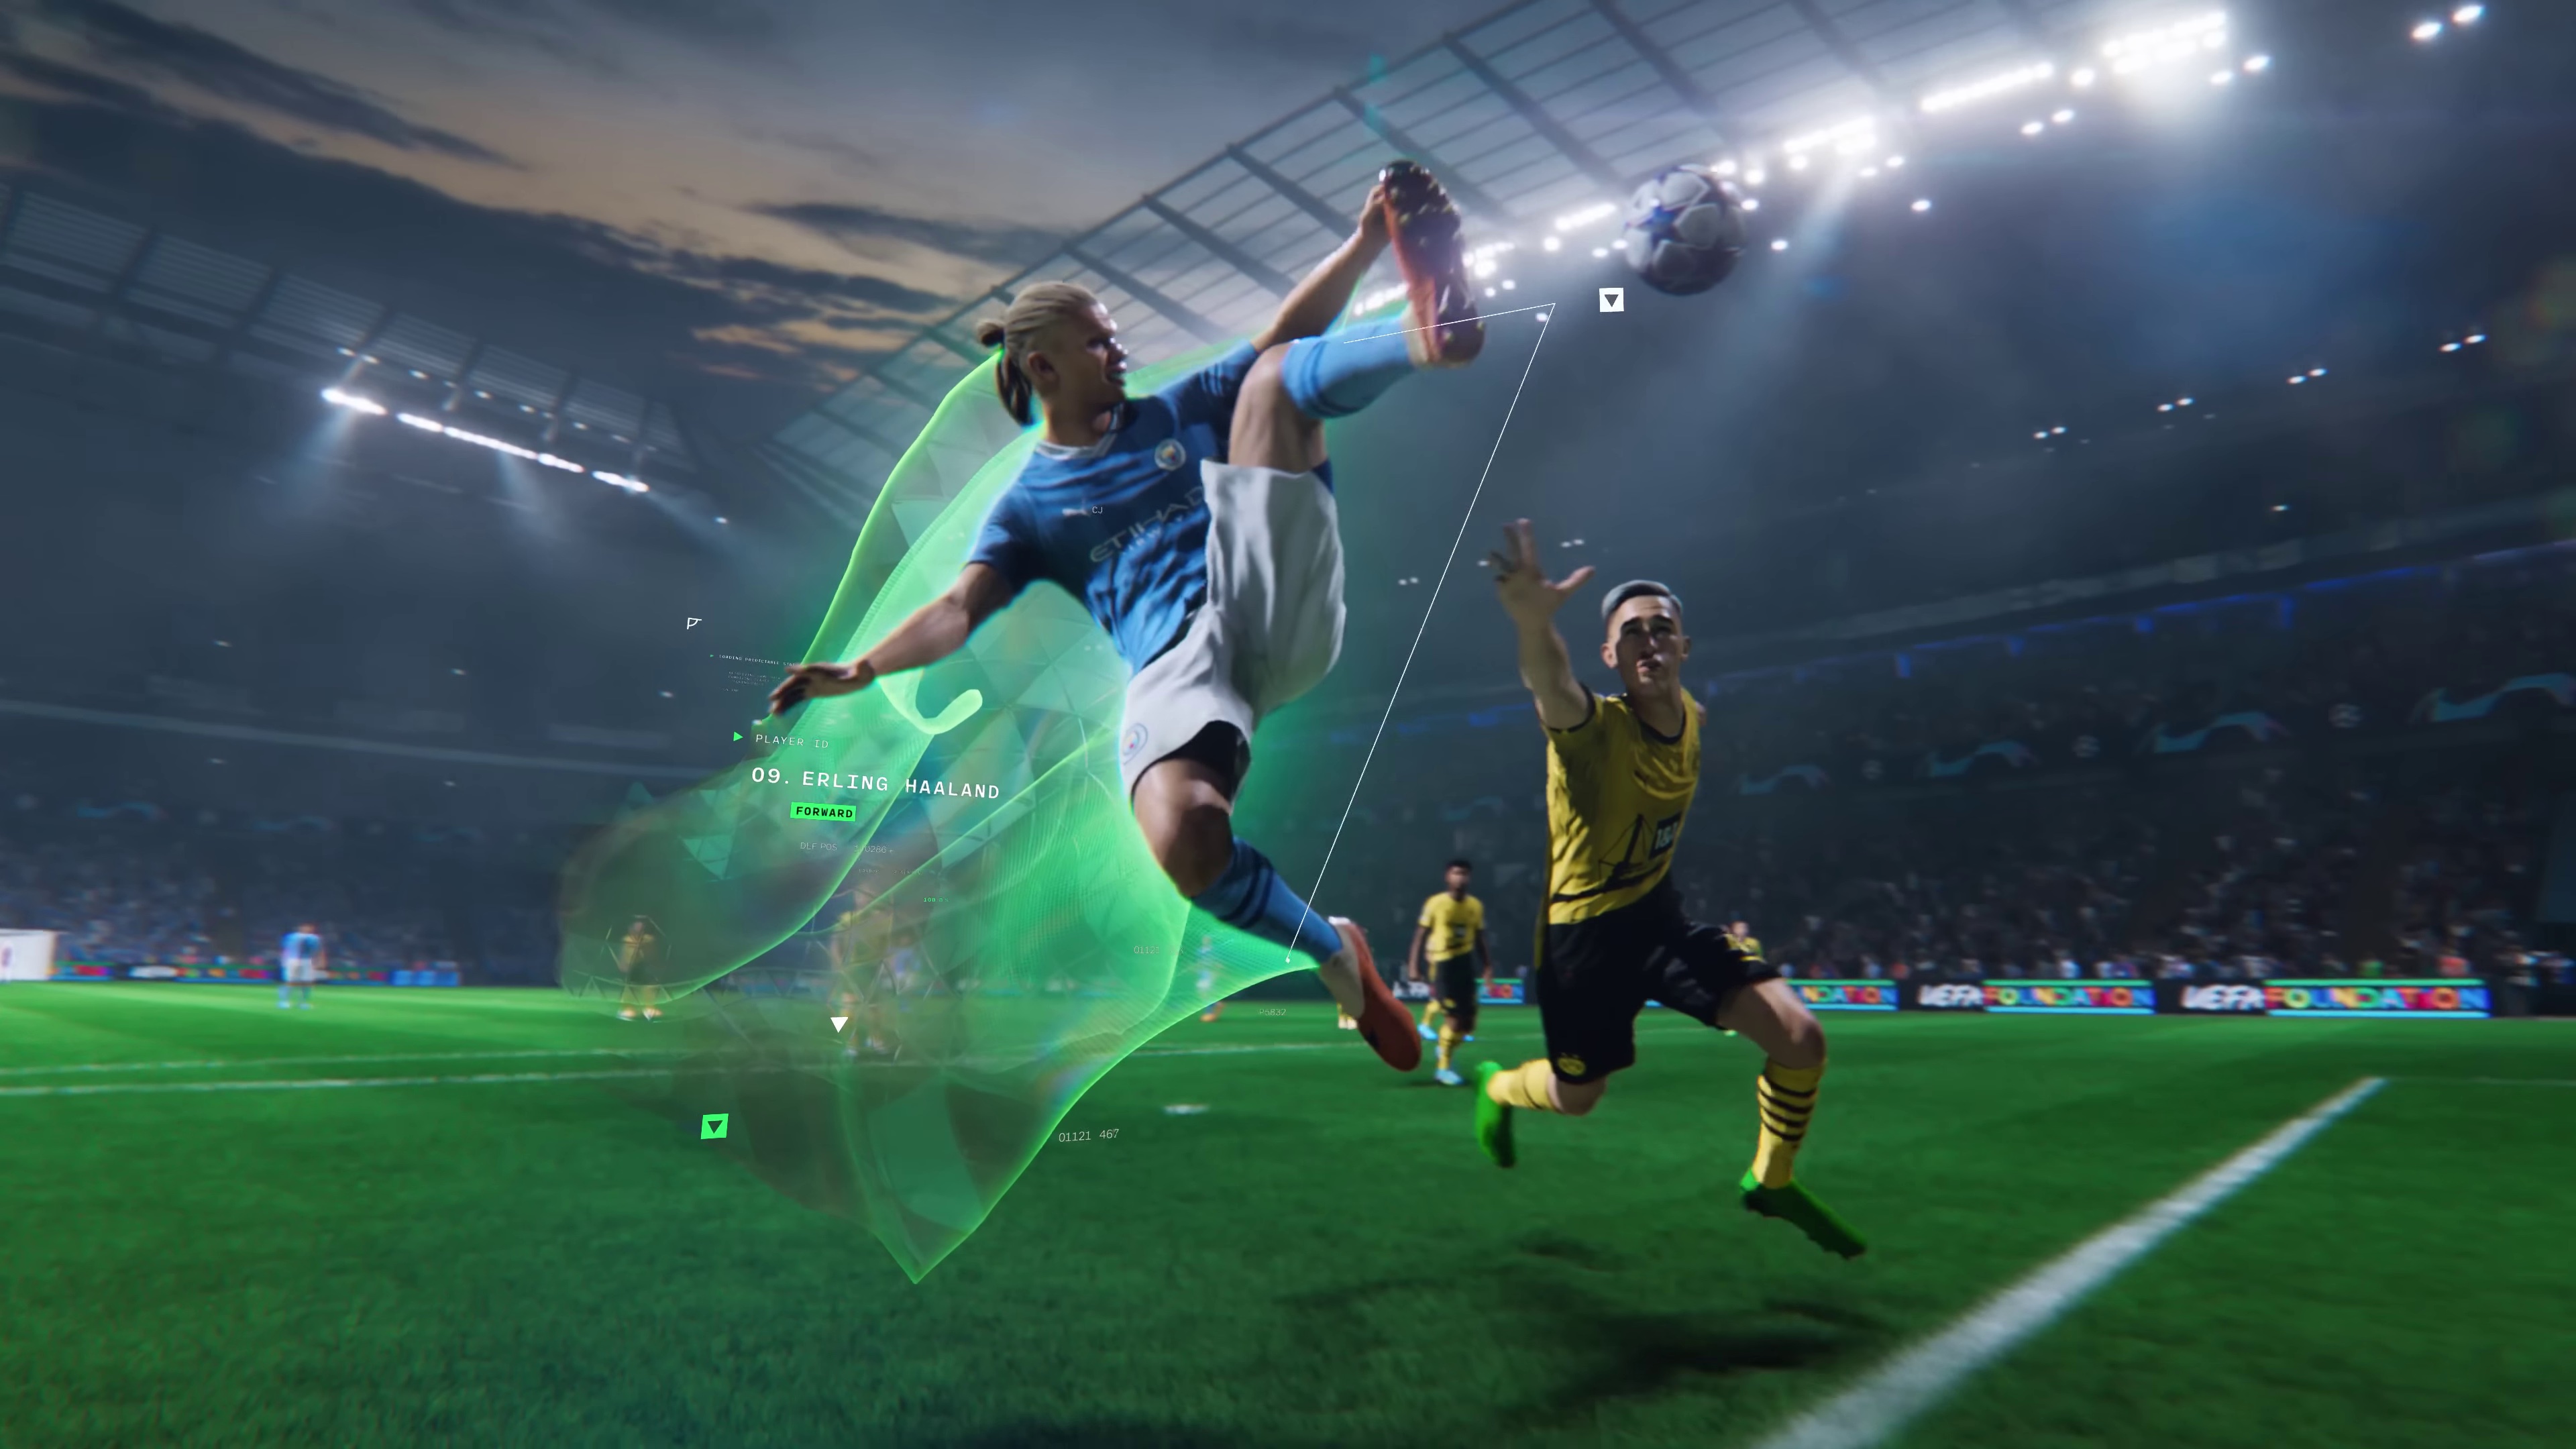 EA SPORTS FC: Beta de EA Sports FC 24: cómo acceder, requisitos y